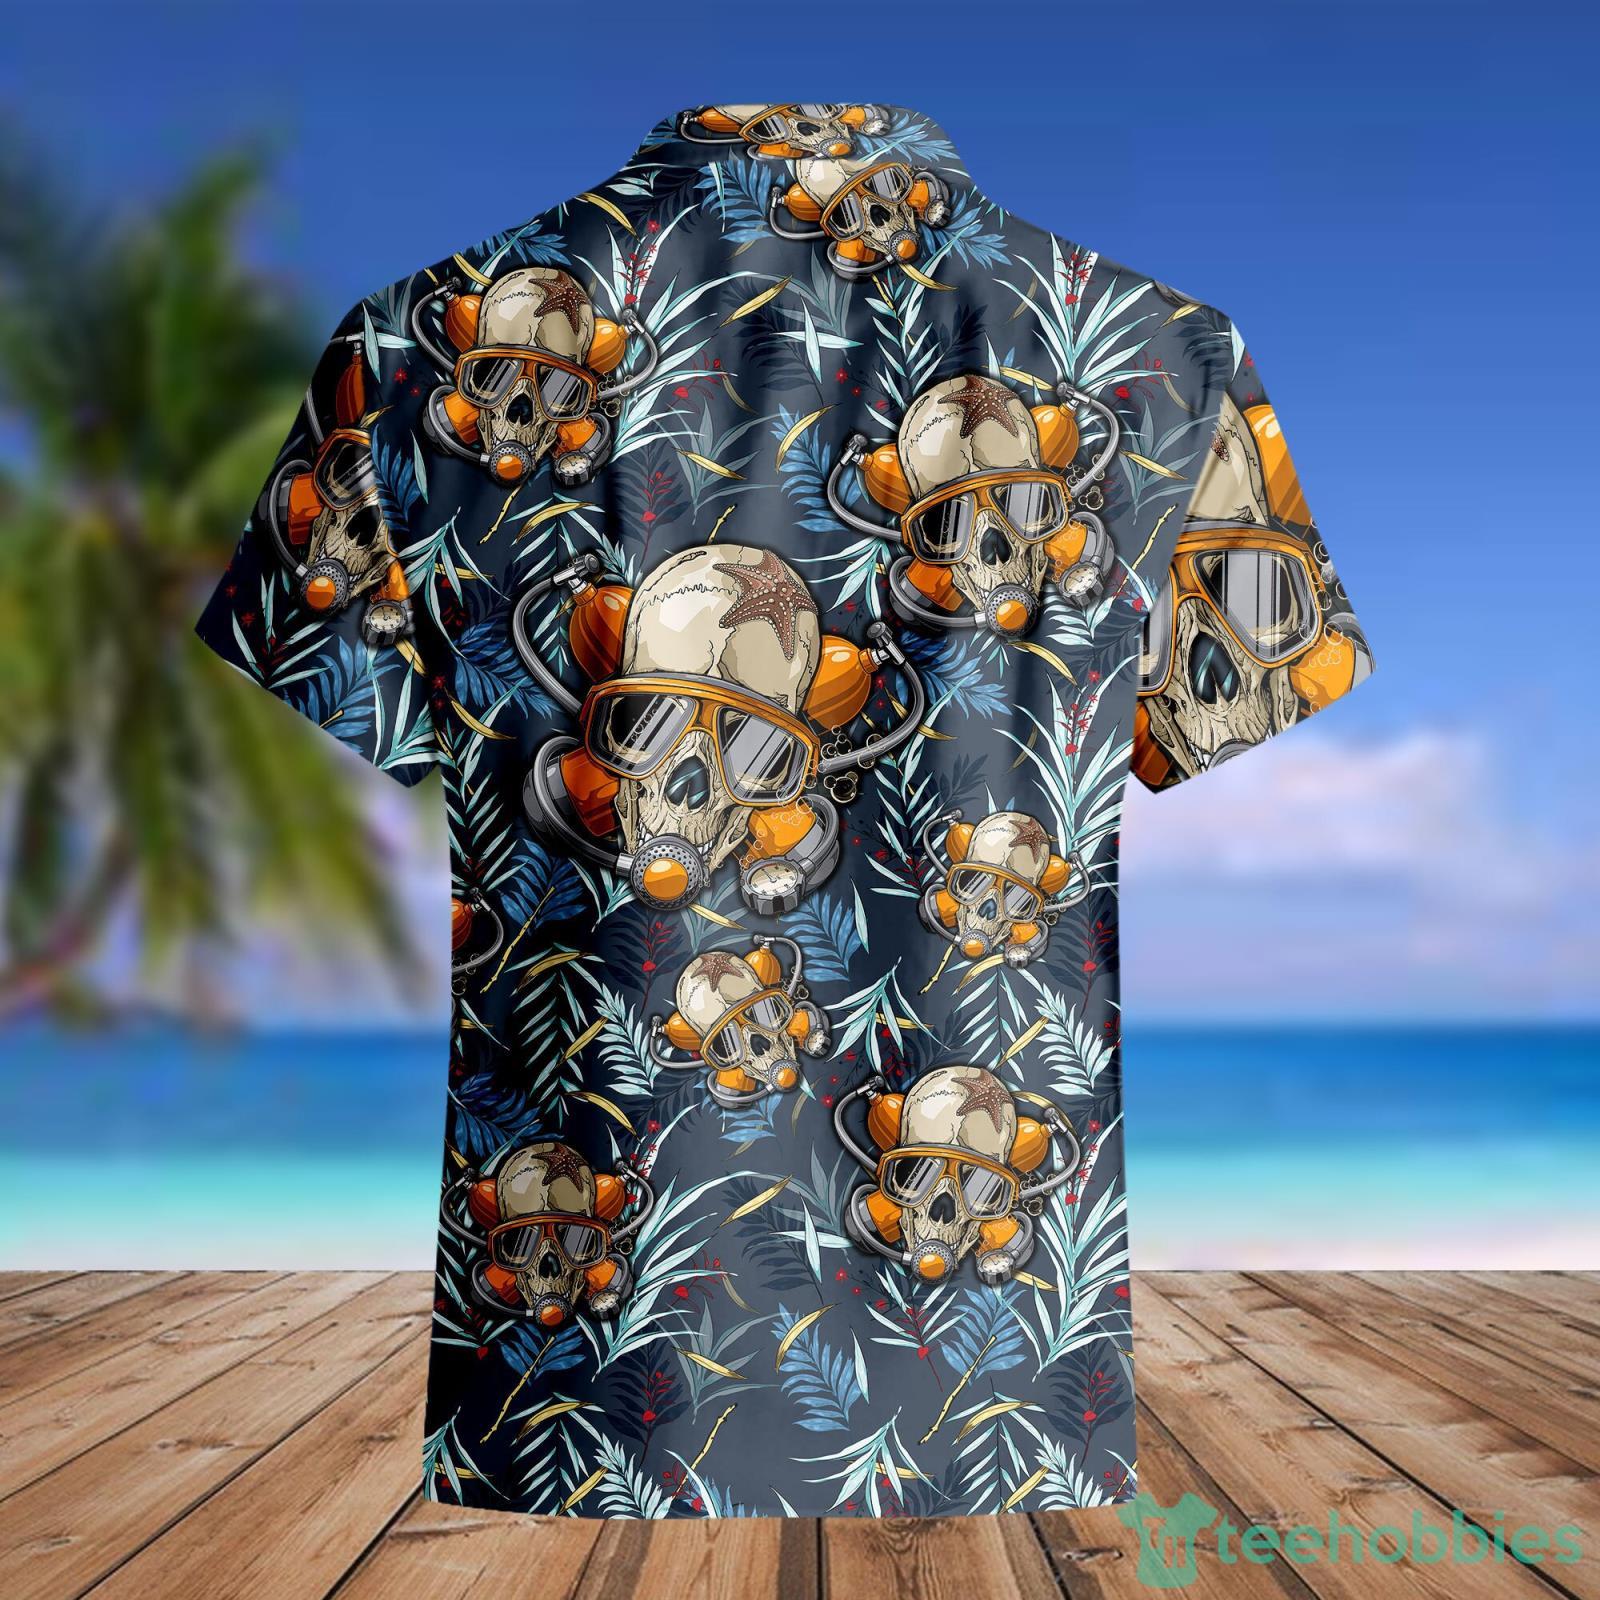 Scuba Diving Helmet Hawaii Shirt Tropical Summer For Men And Women